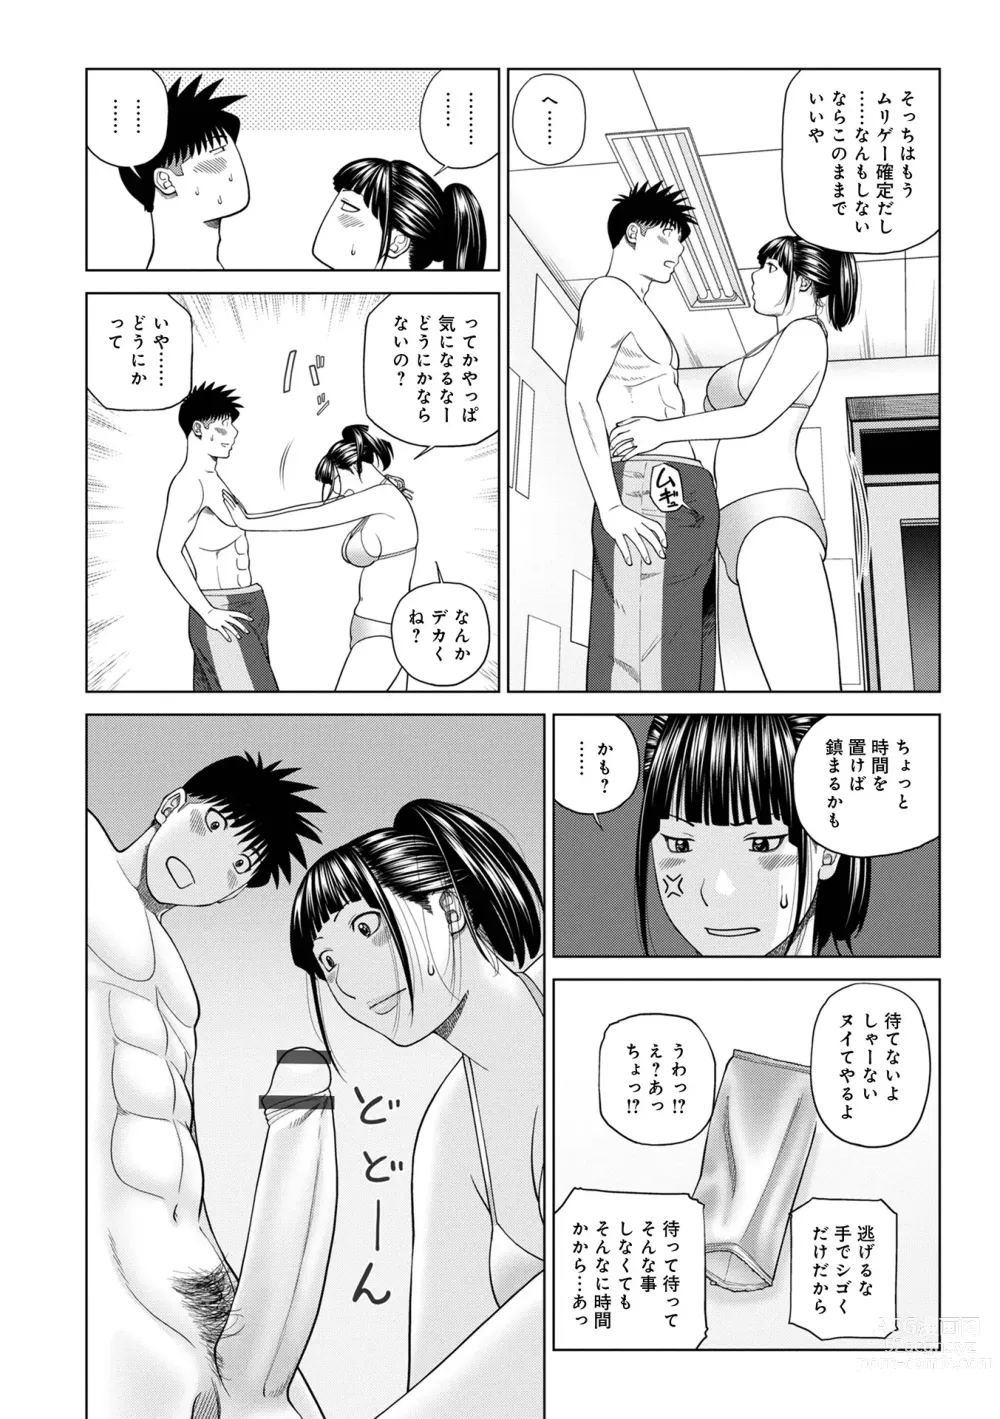 Page 14 of manga WEB Ban COMIC Gekiyaba! Vol. 160